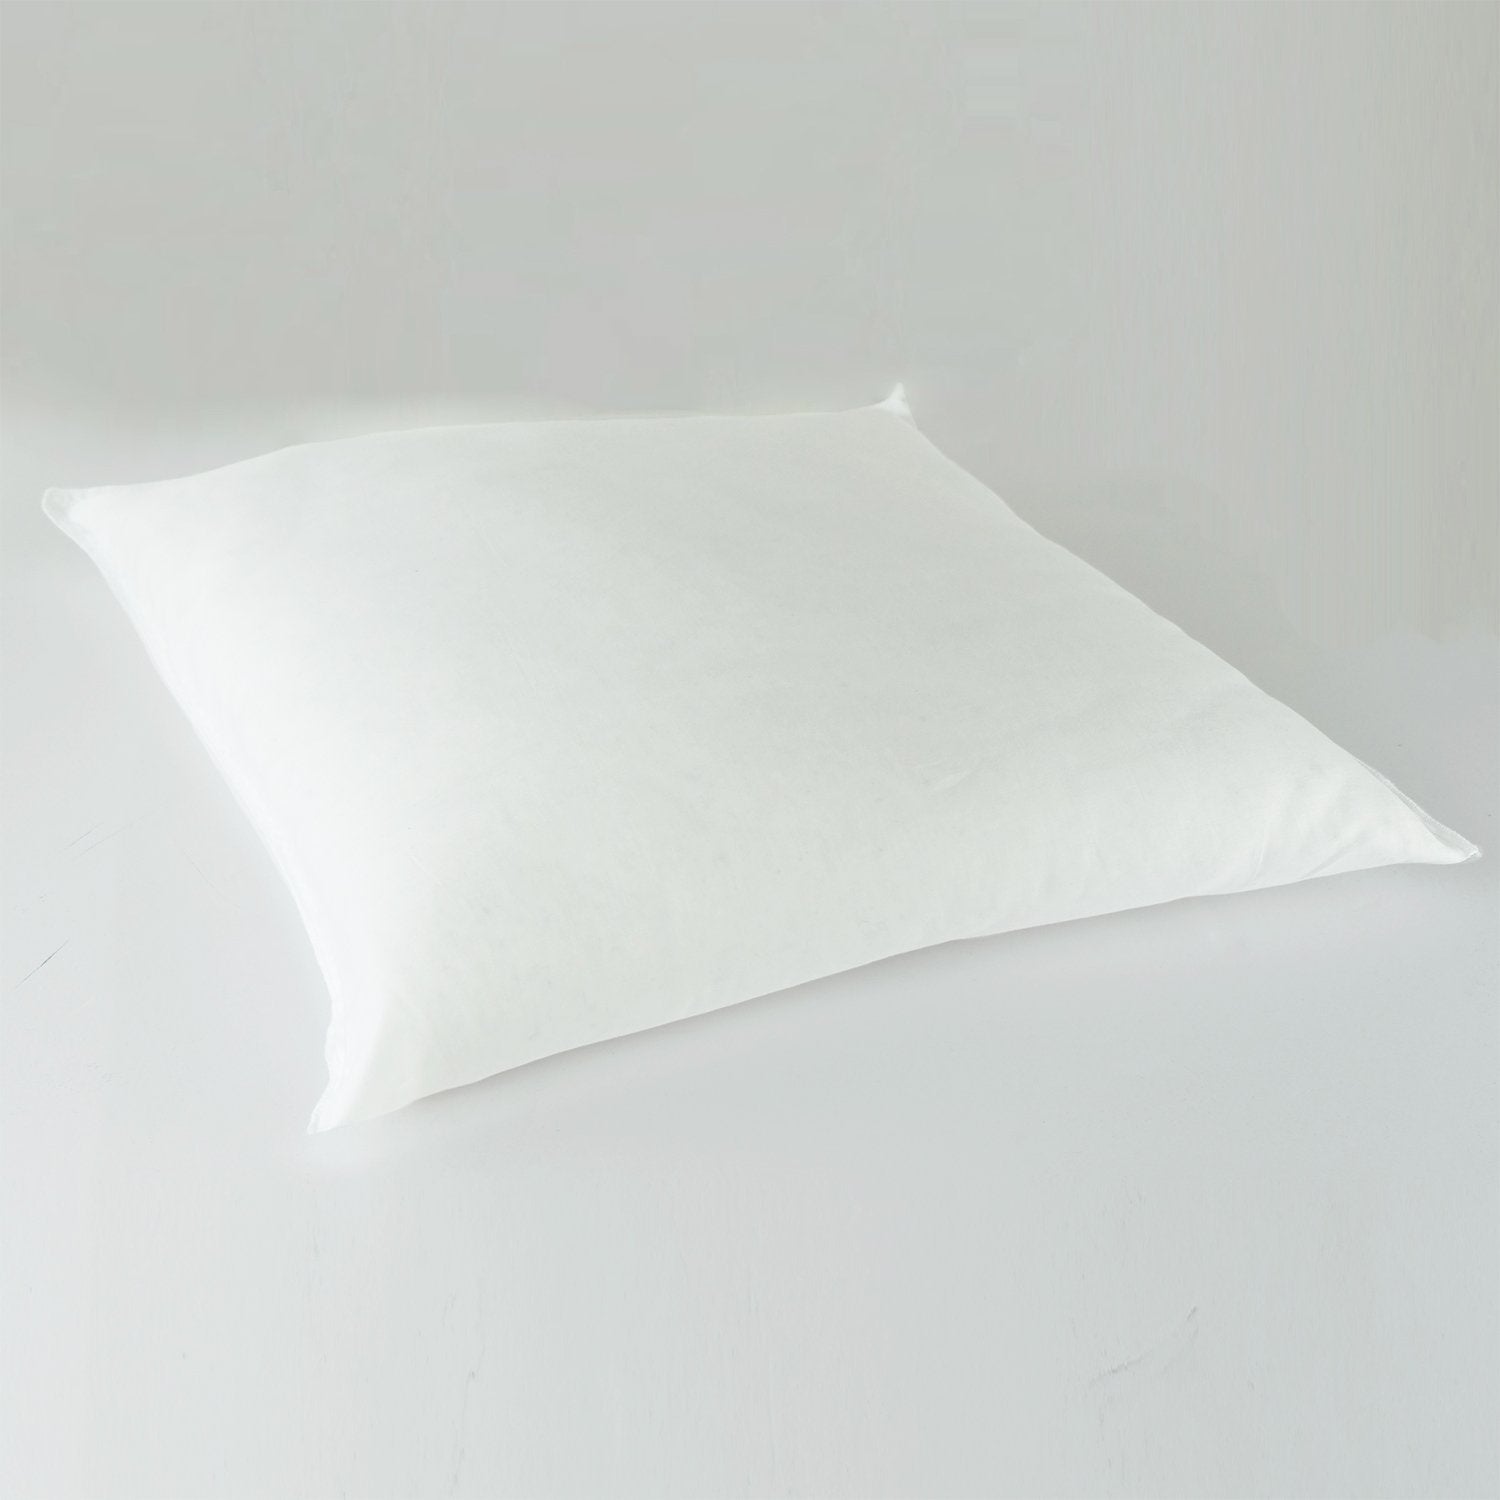 J-Life Kanji Black Zabuton Floor Pillow_Pillows & Shams_Zabuton Floor Pillows_100% Cotton_Reversible_Handmade